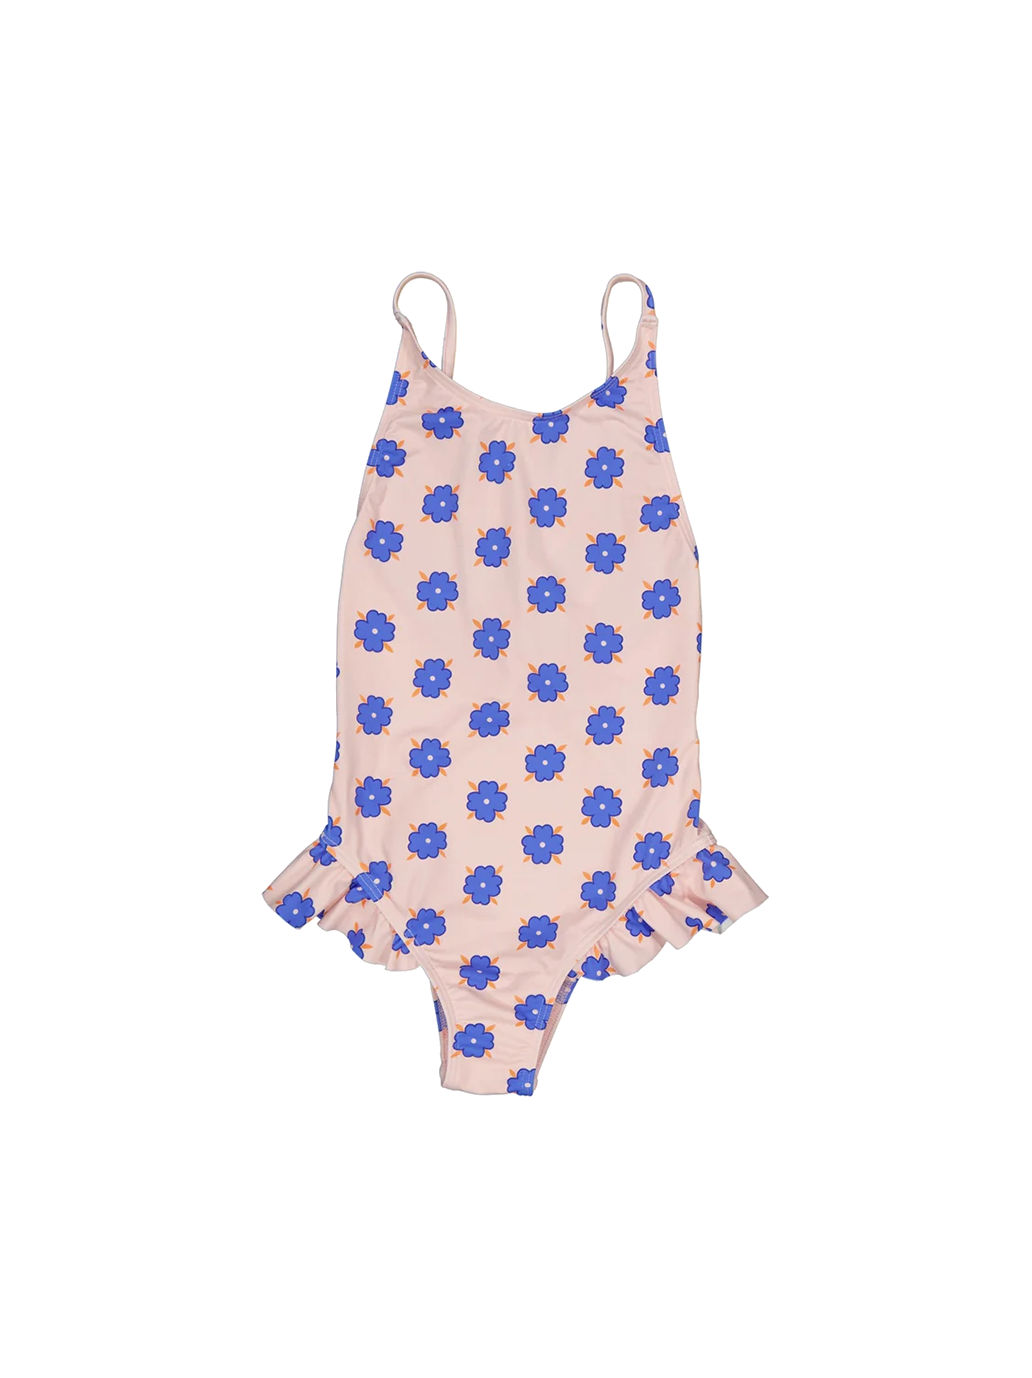 Swim suit